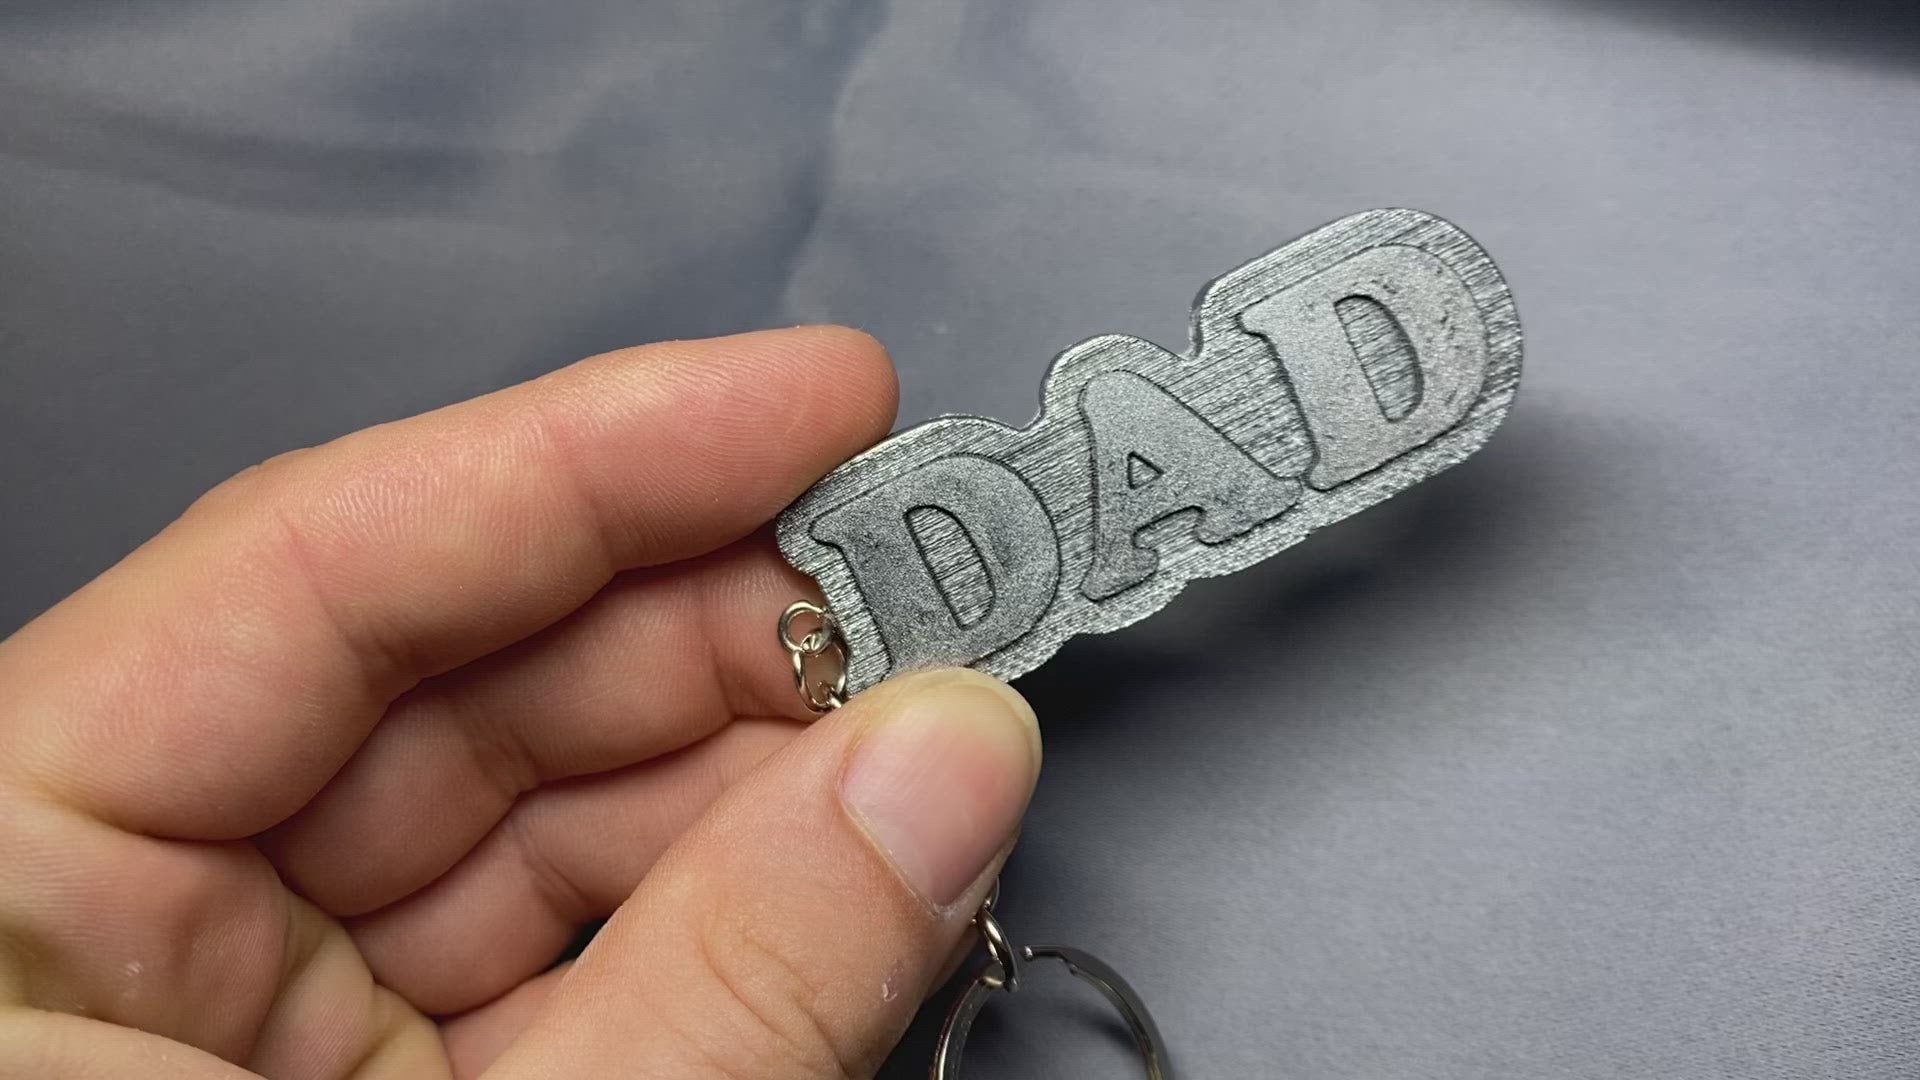 Dad Metallic Letter Key ring